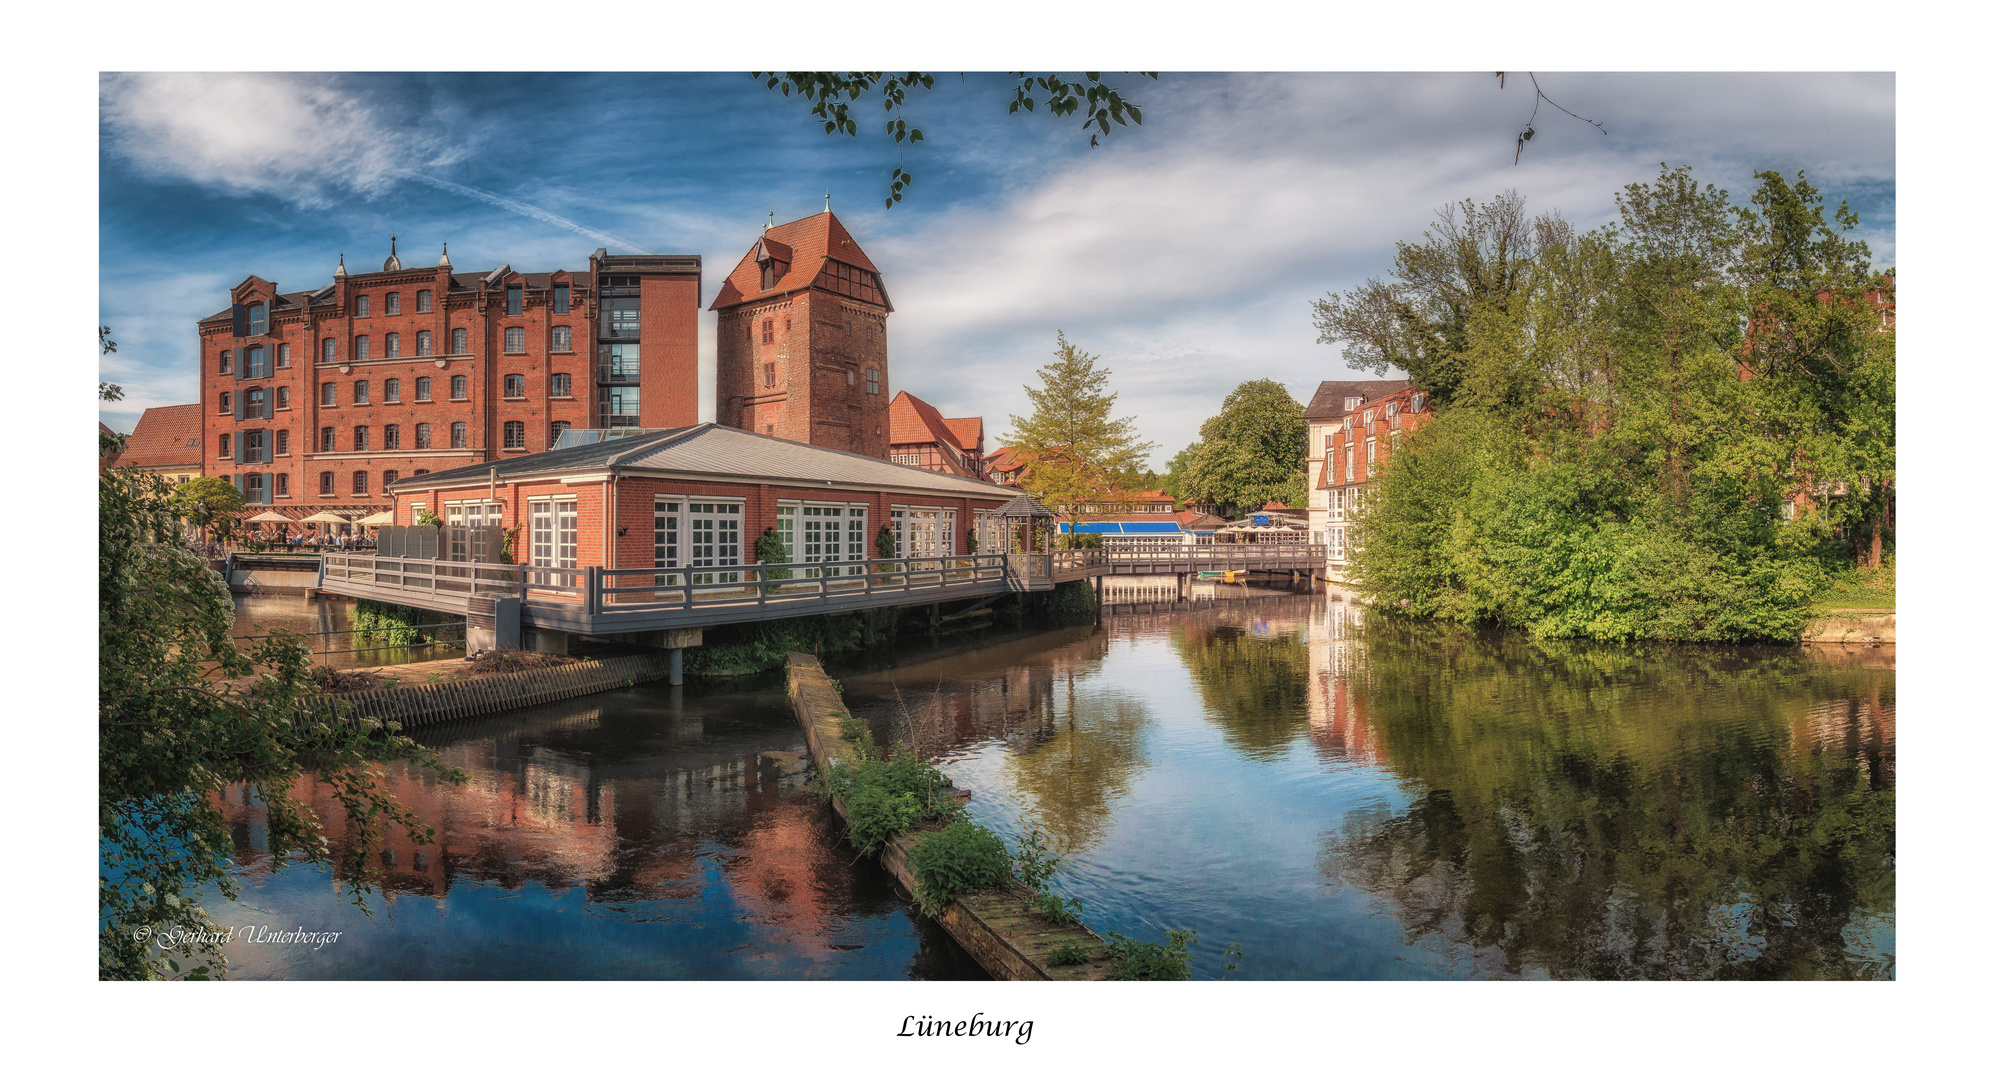 Wunderbare historische Stadt Lüneburg